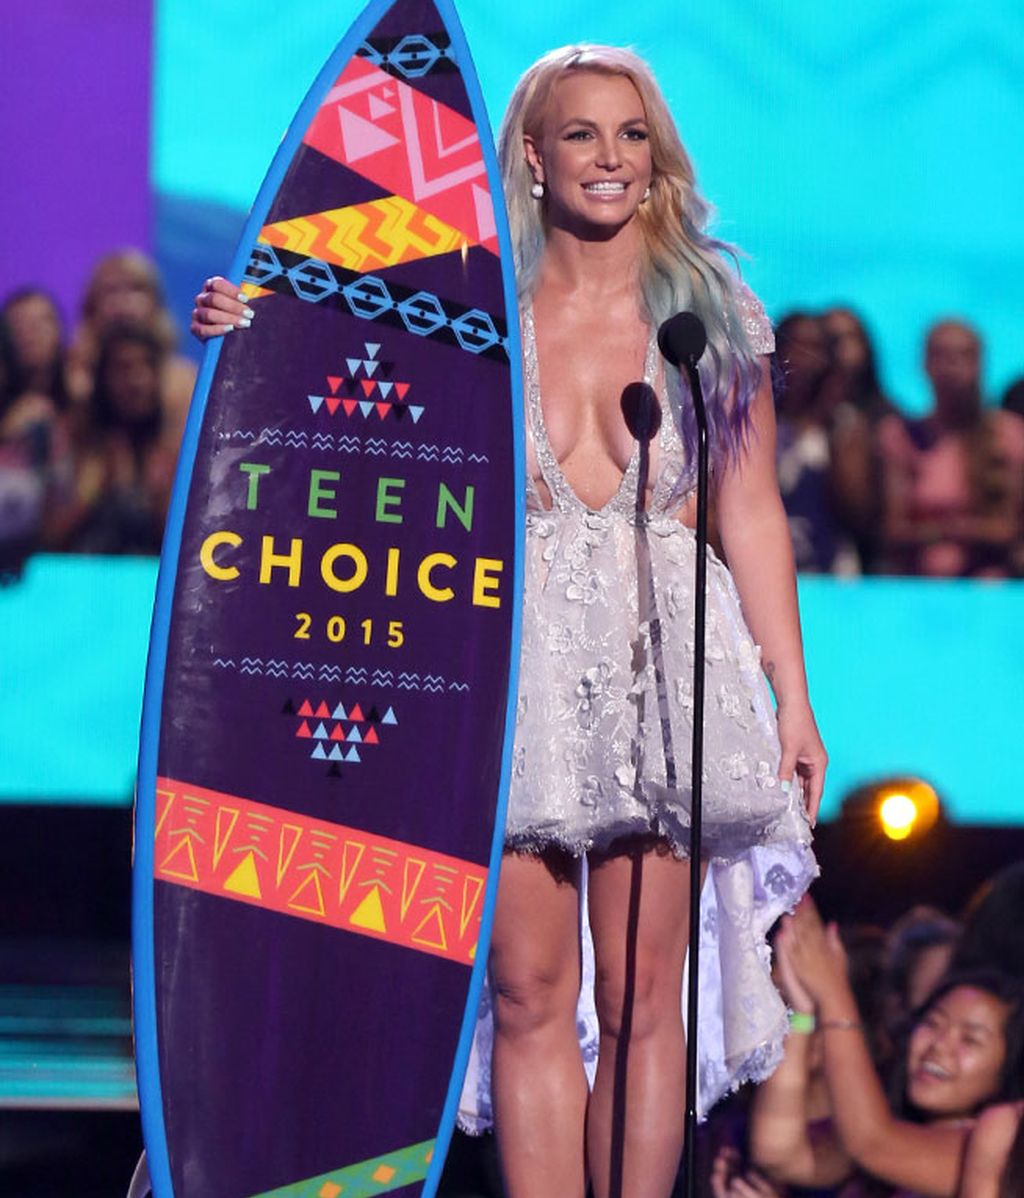 El escotazo de Britney o el pelo rojo de Rita Ora: los 'Teen Choice Awards', foto a foto